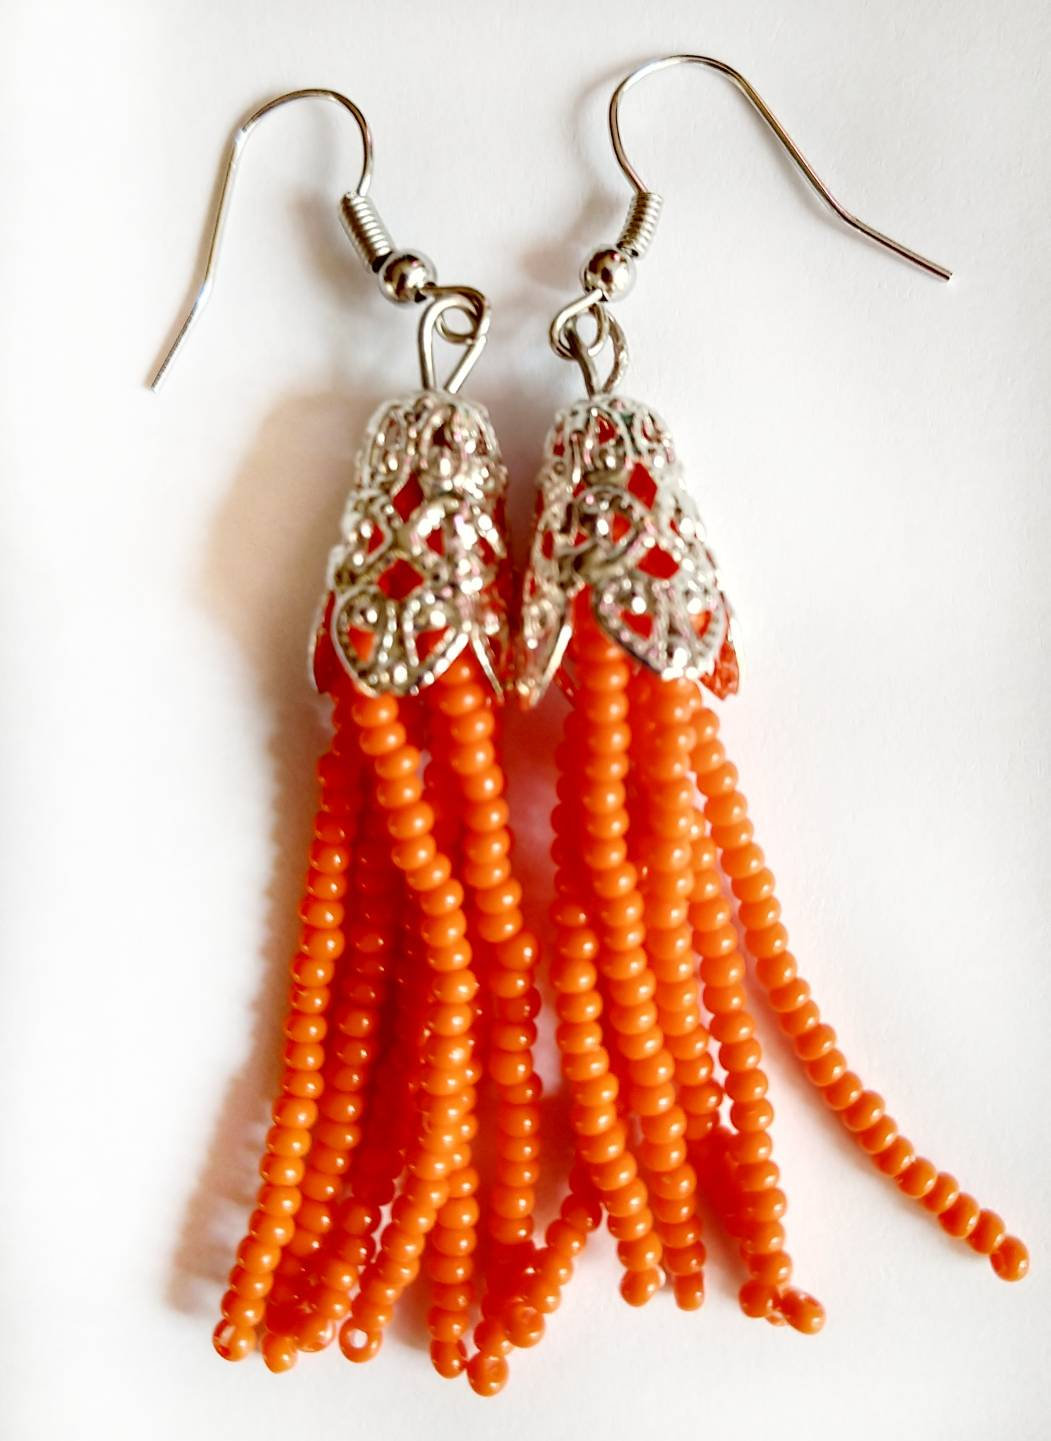 Tassel Earrings Beaded Tassel Earrings Beaded Earrings Orange Tassel Earrings Orange Beaded Earrings Seed Bead Tassel Earrings